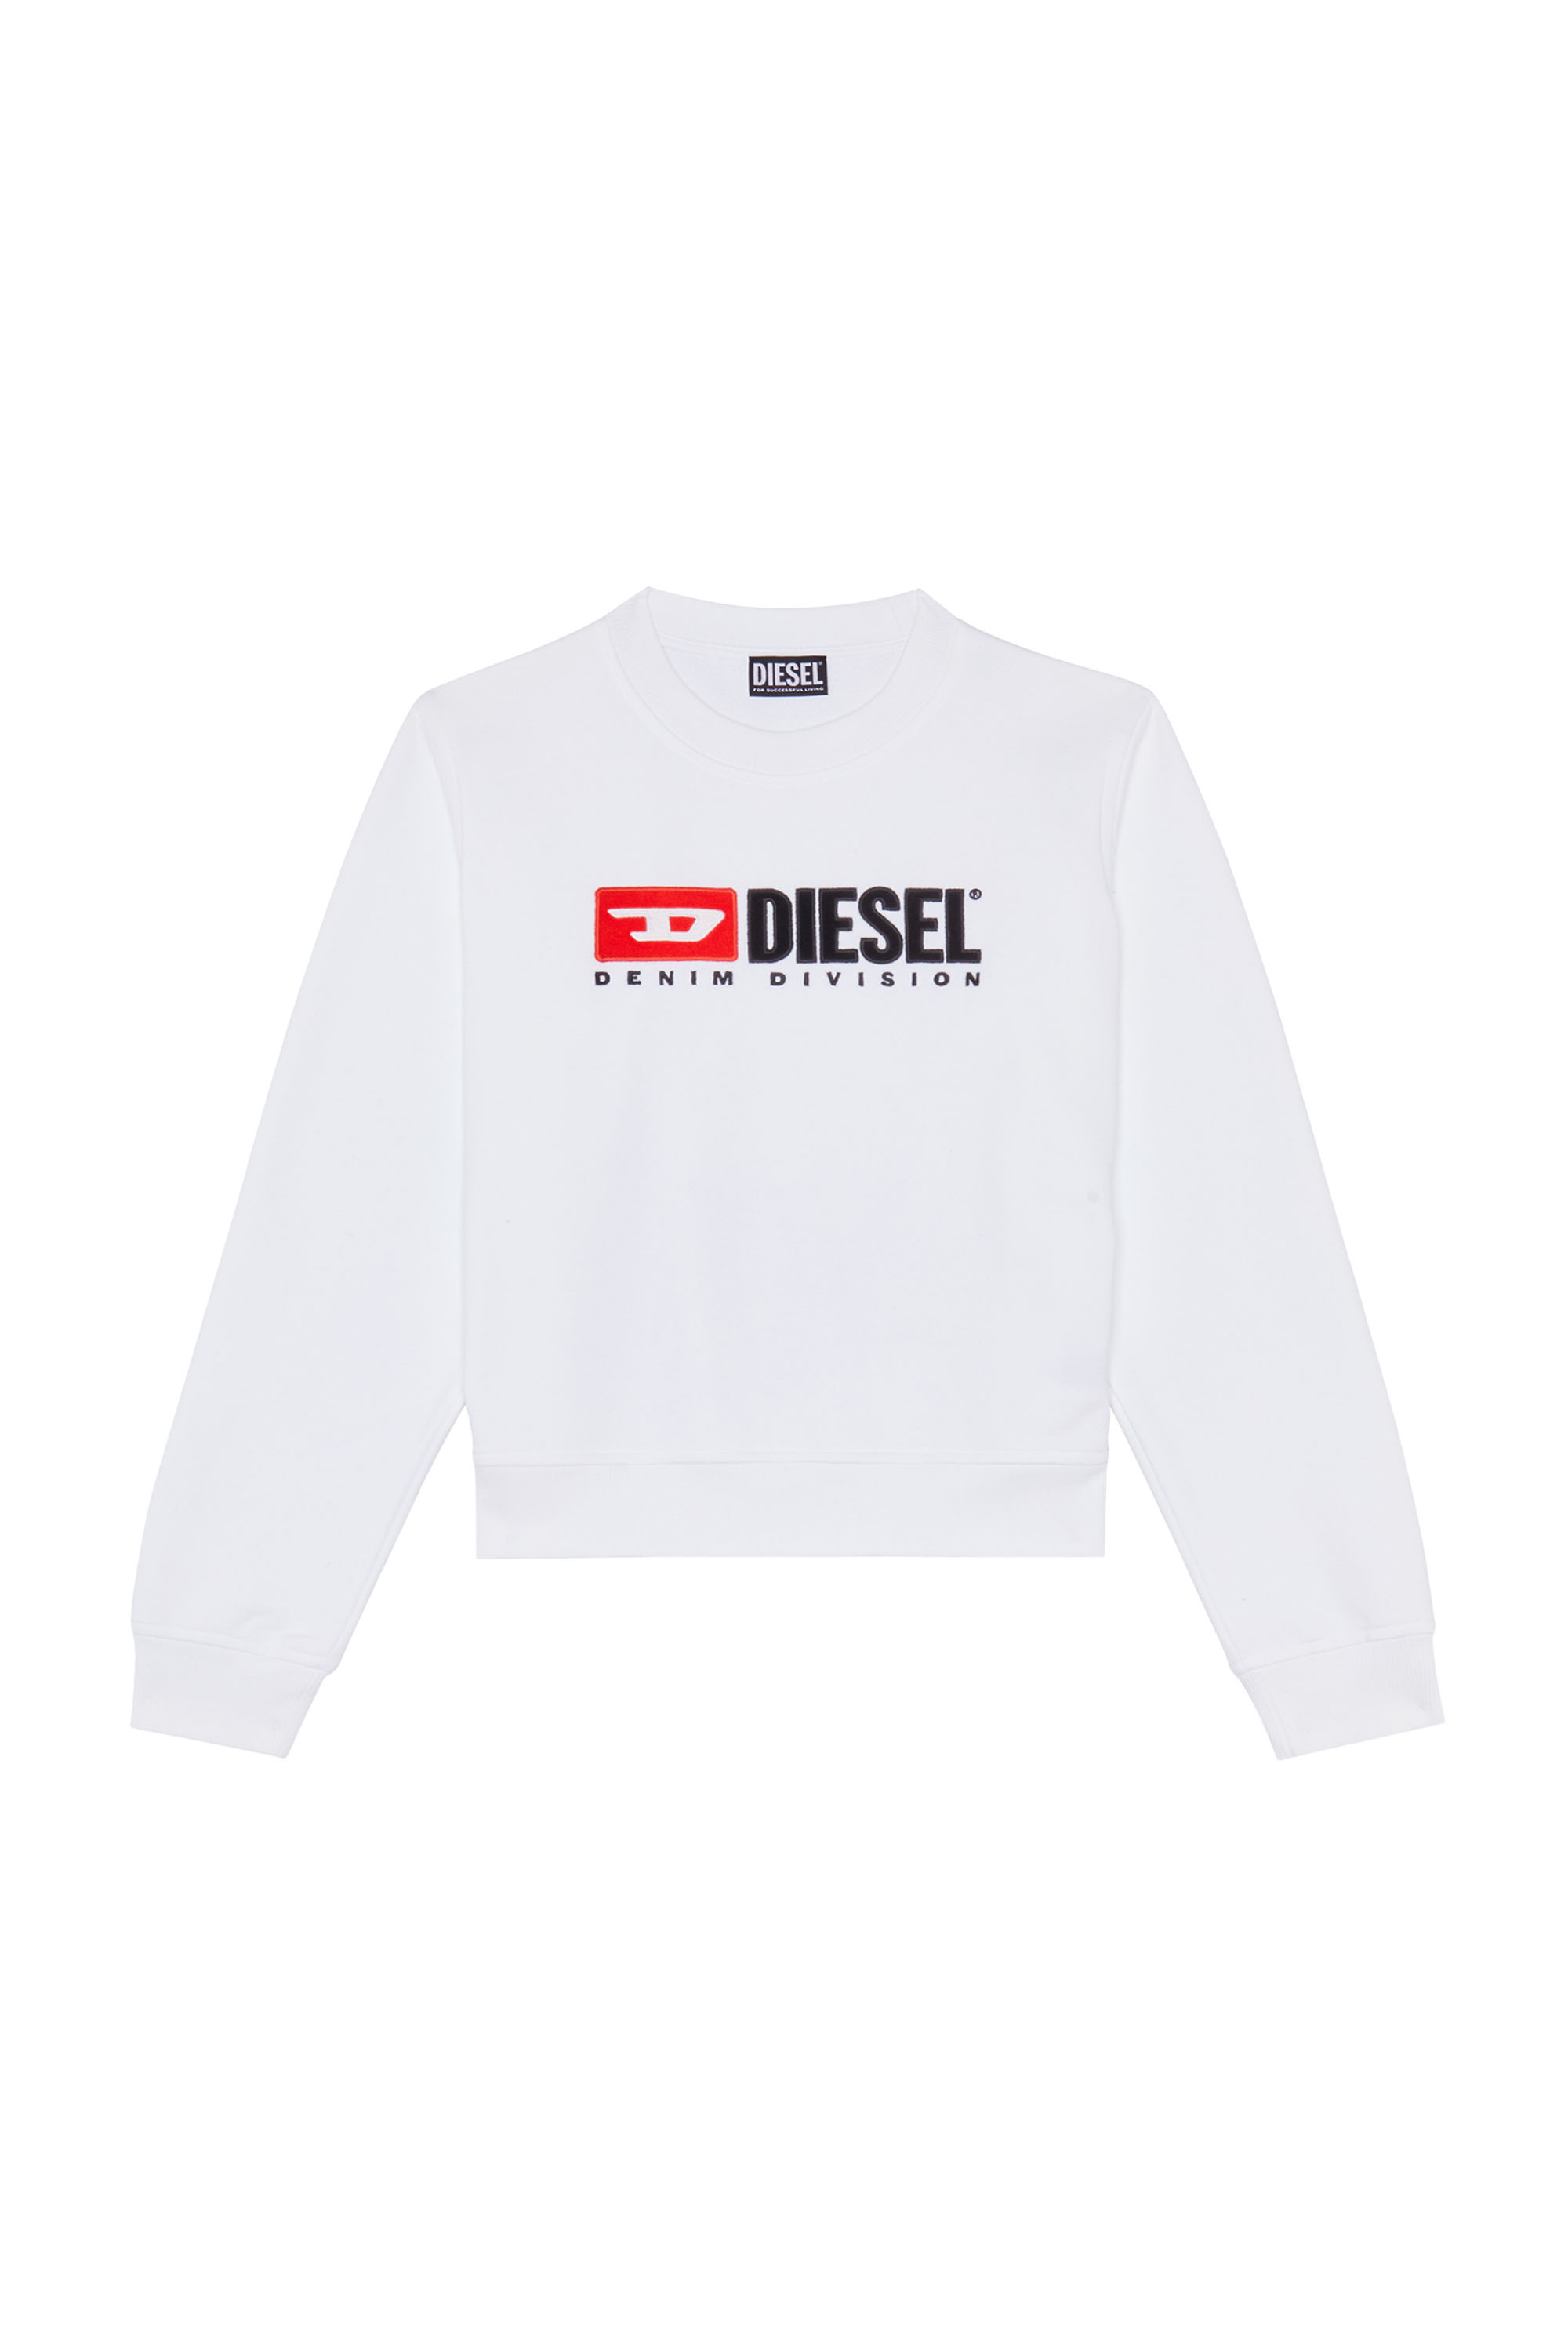 Diesel - F-REGGY-DIV, Bianco - Image 1